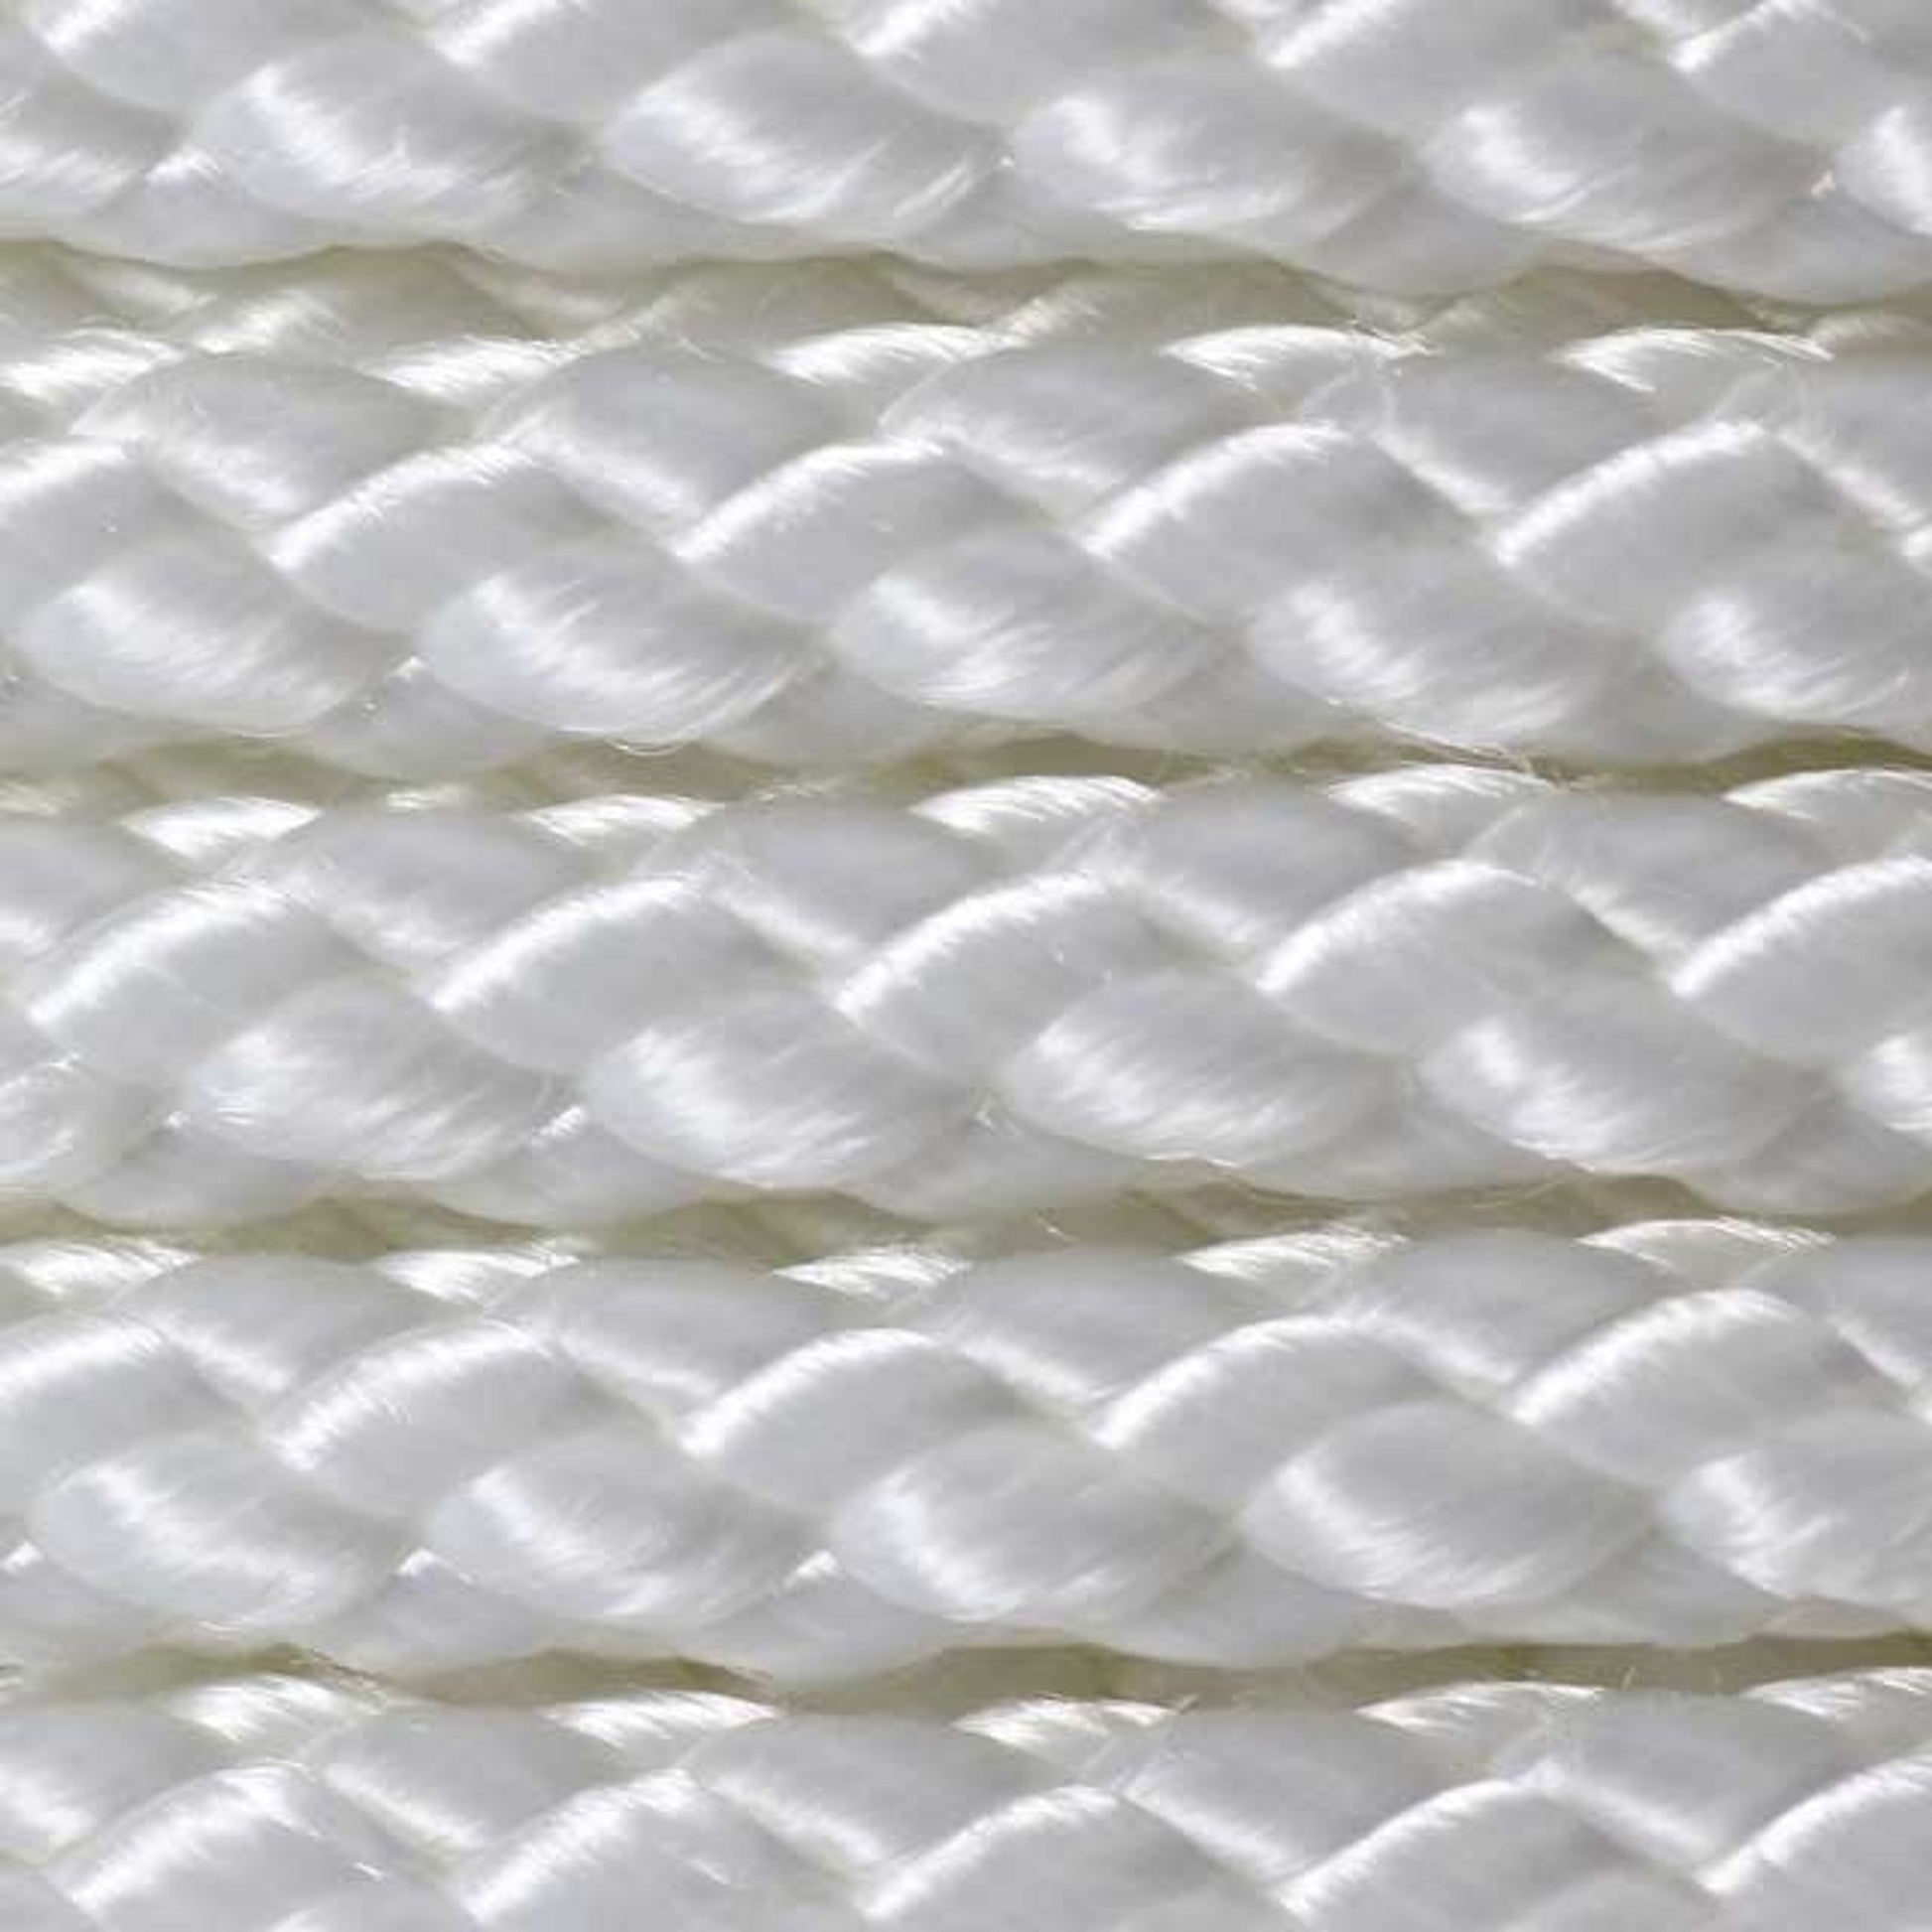 1/4 Diamond Braid Polyester Rope (1000')